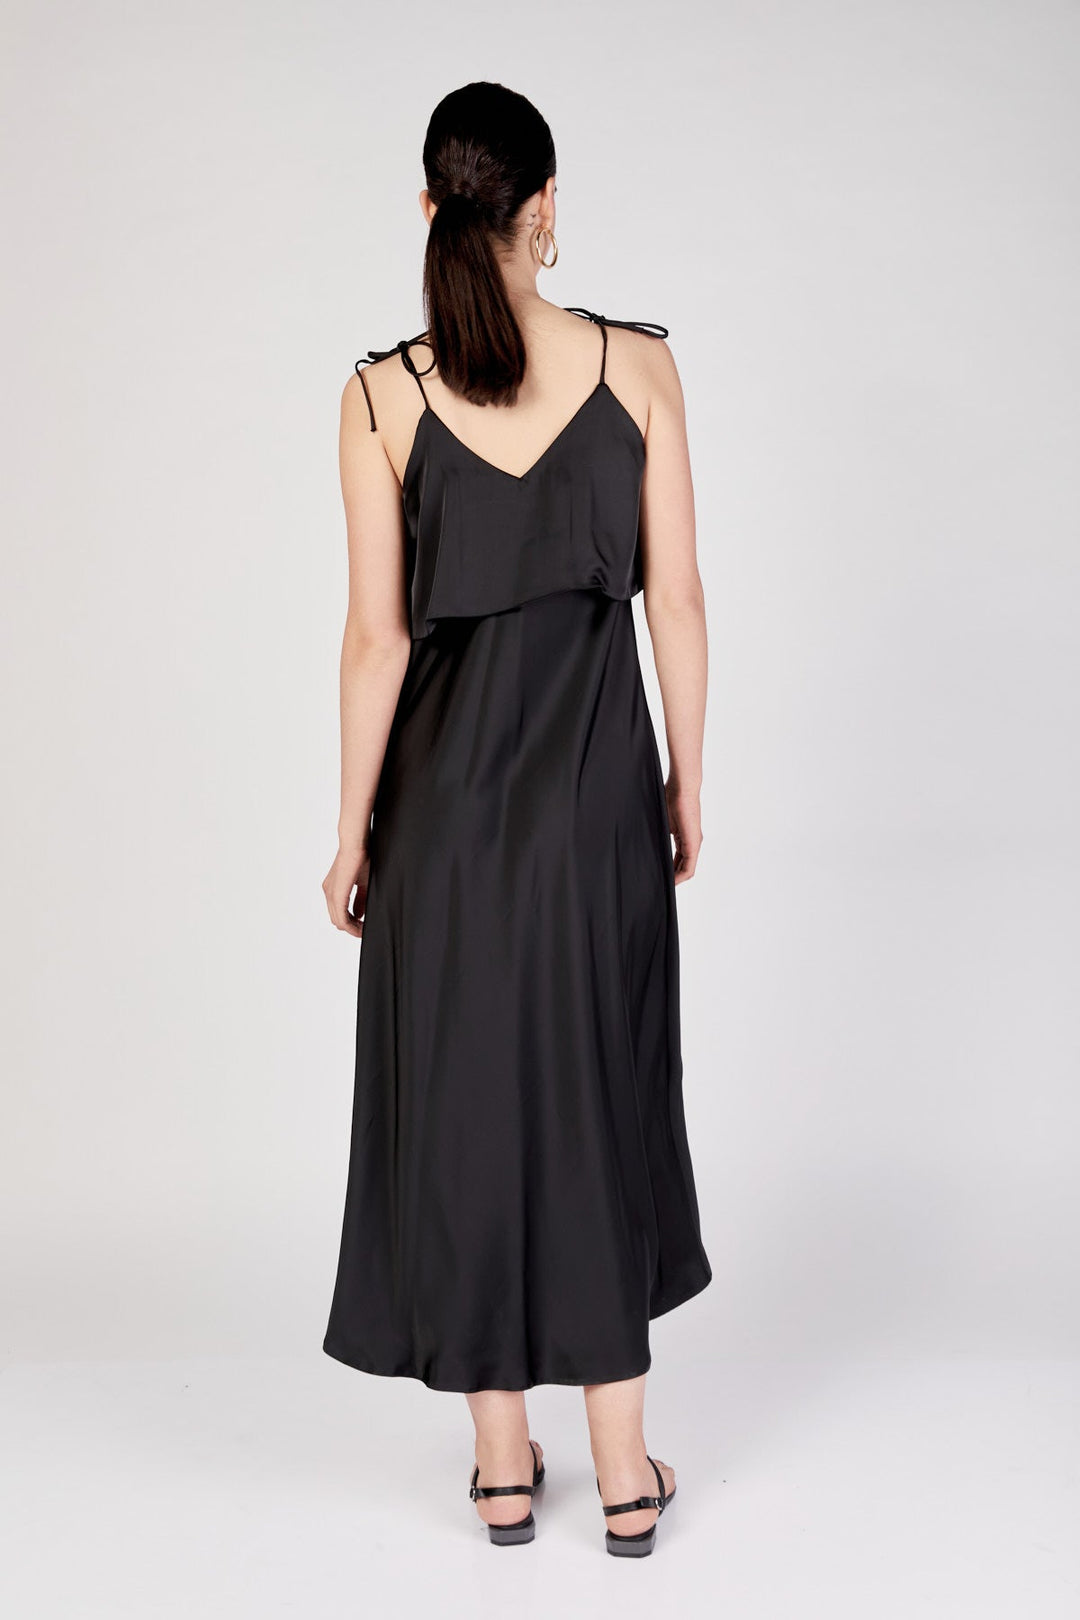 שמלת מידי שרדוני בצבע שחור - Razili Studio